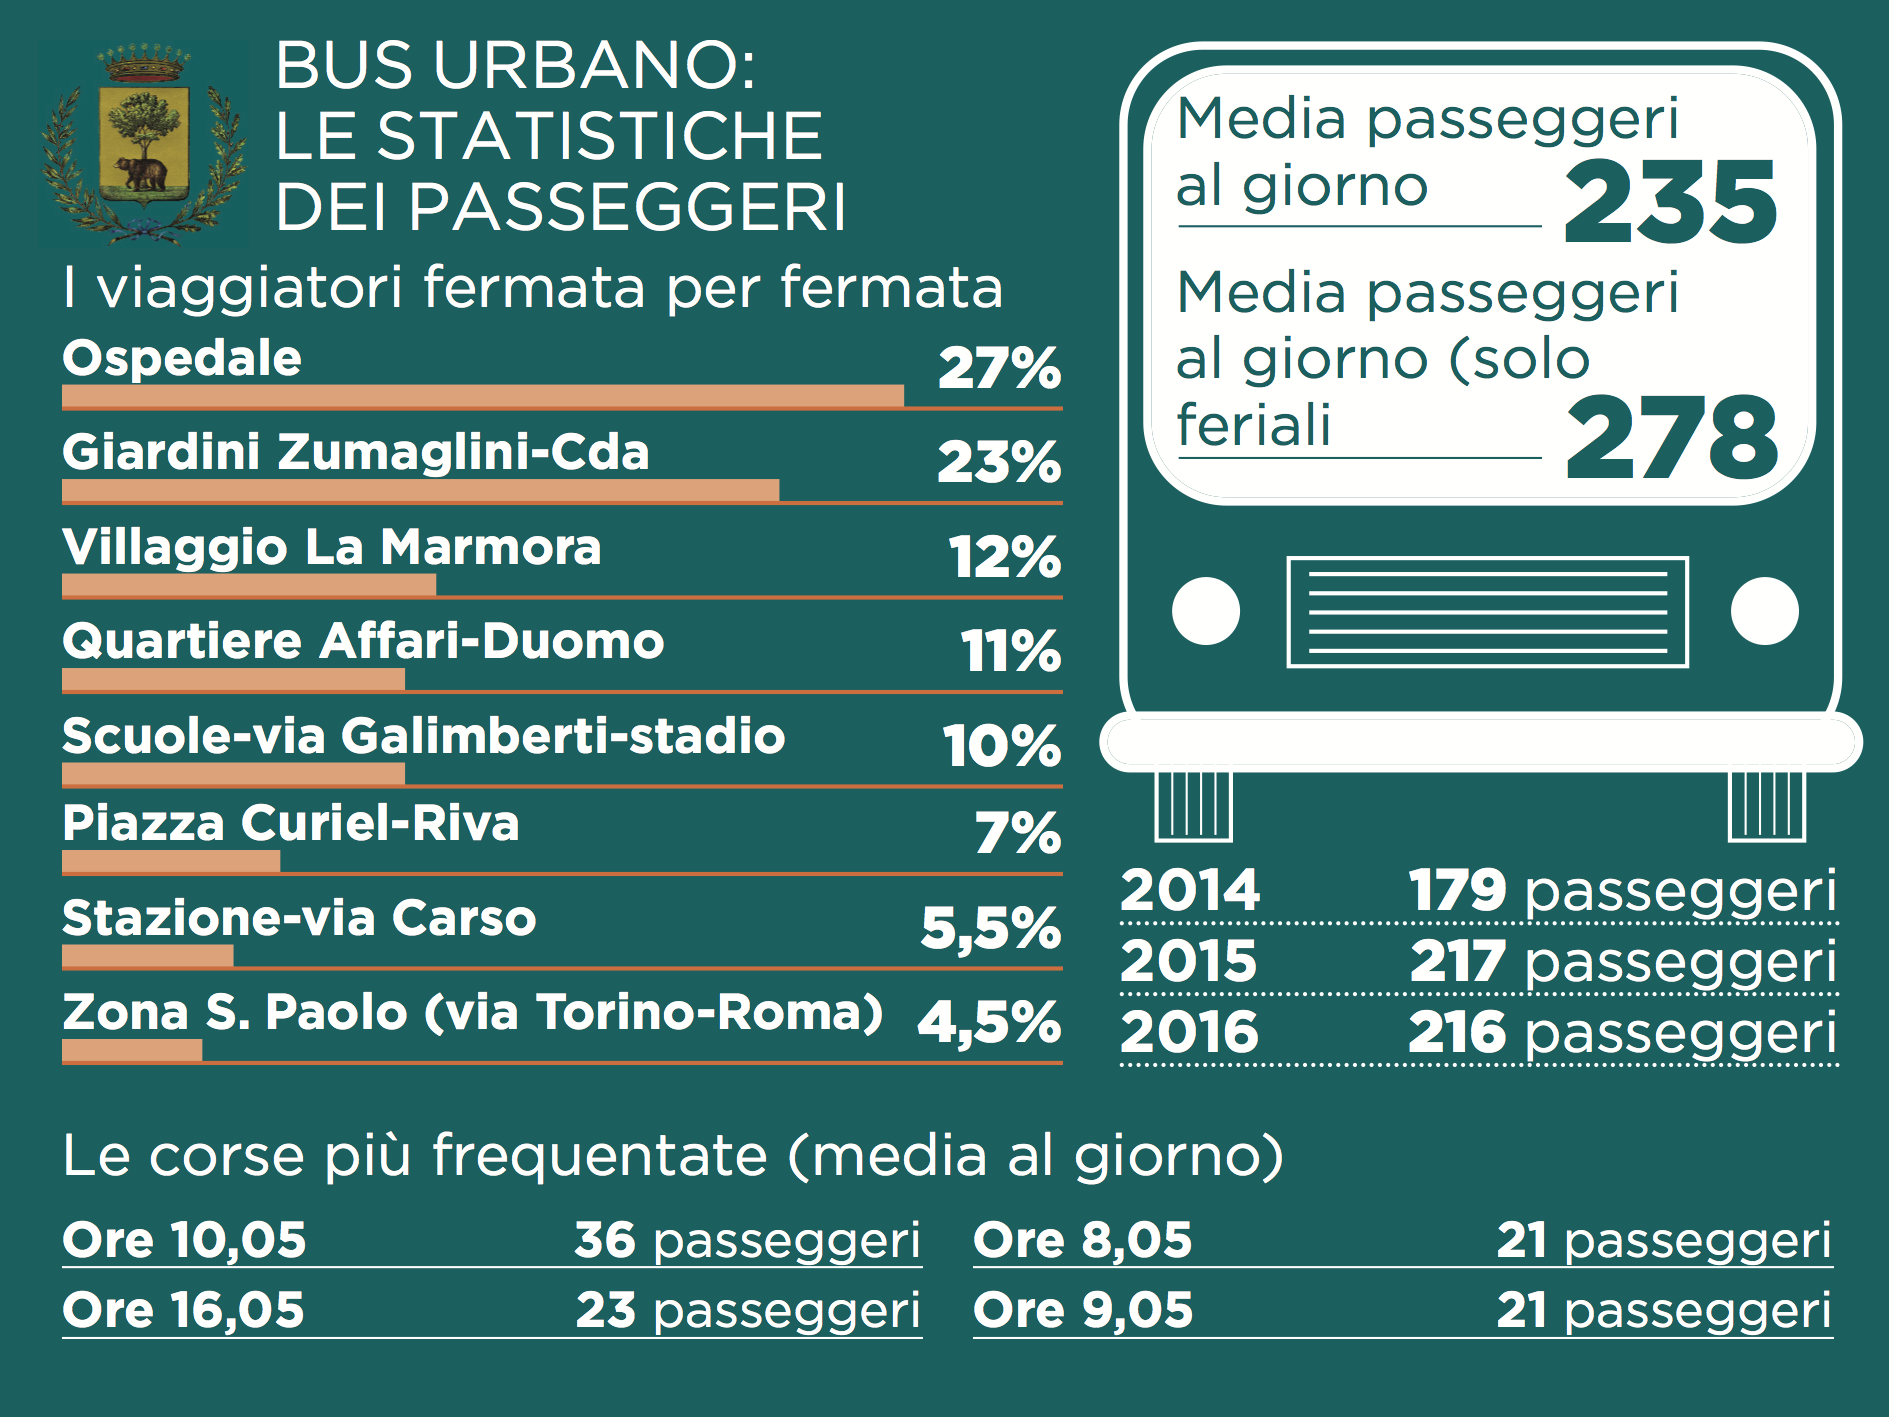 Le statistiche sui passeggeri del bus urbano